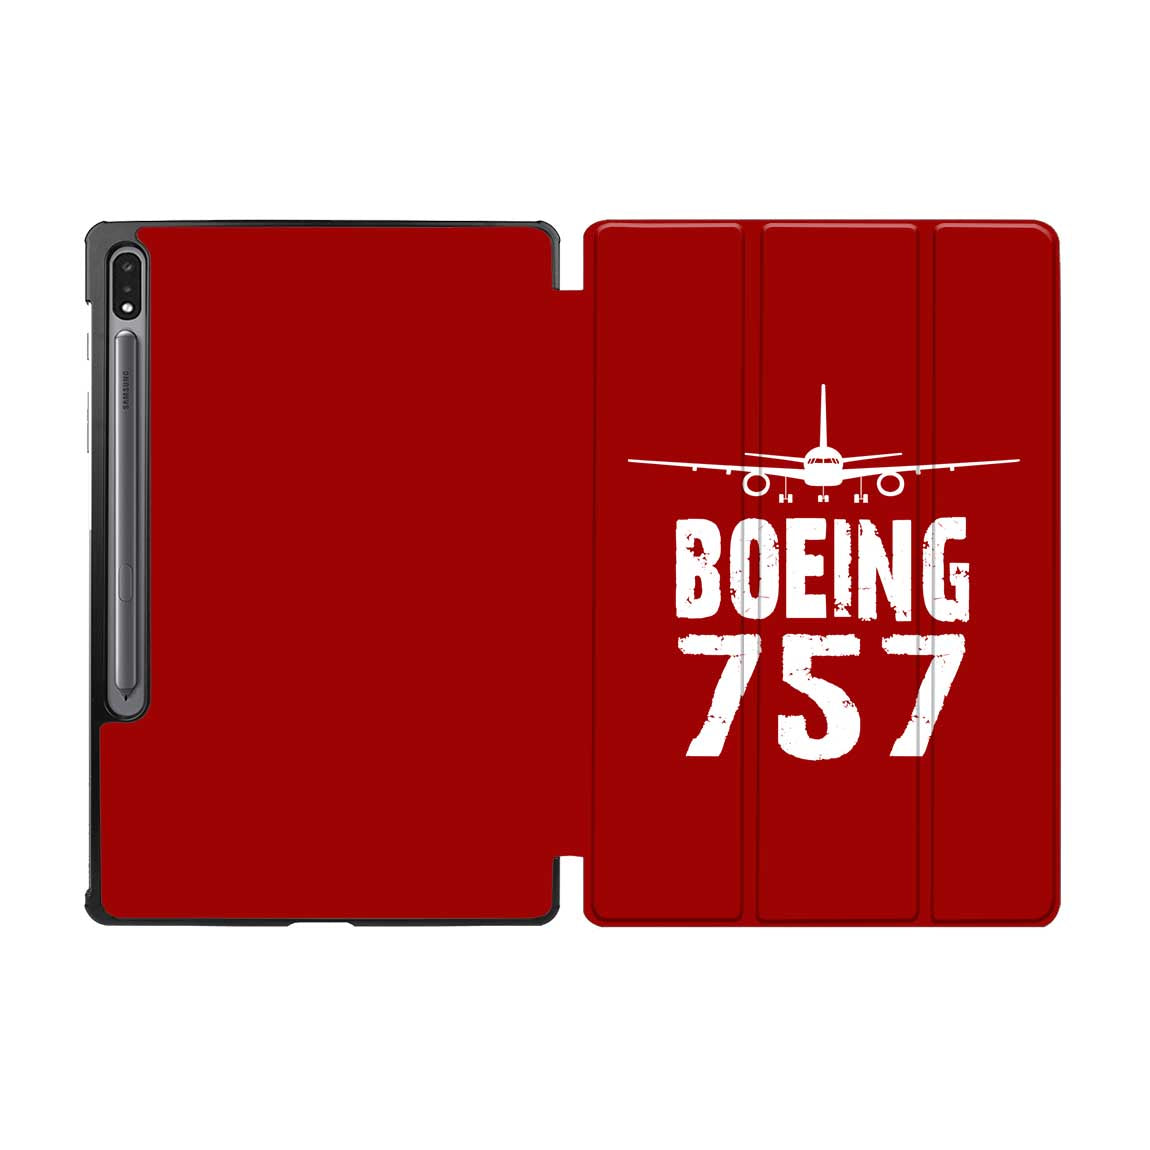 Boeing 757 & Plane Designed Samsung Tablet Cases